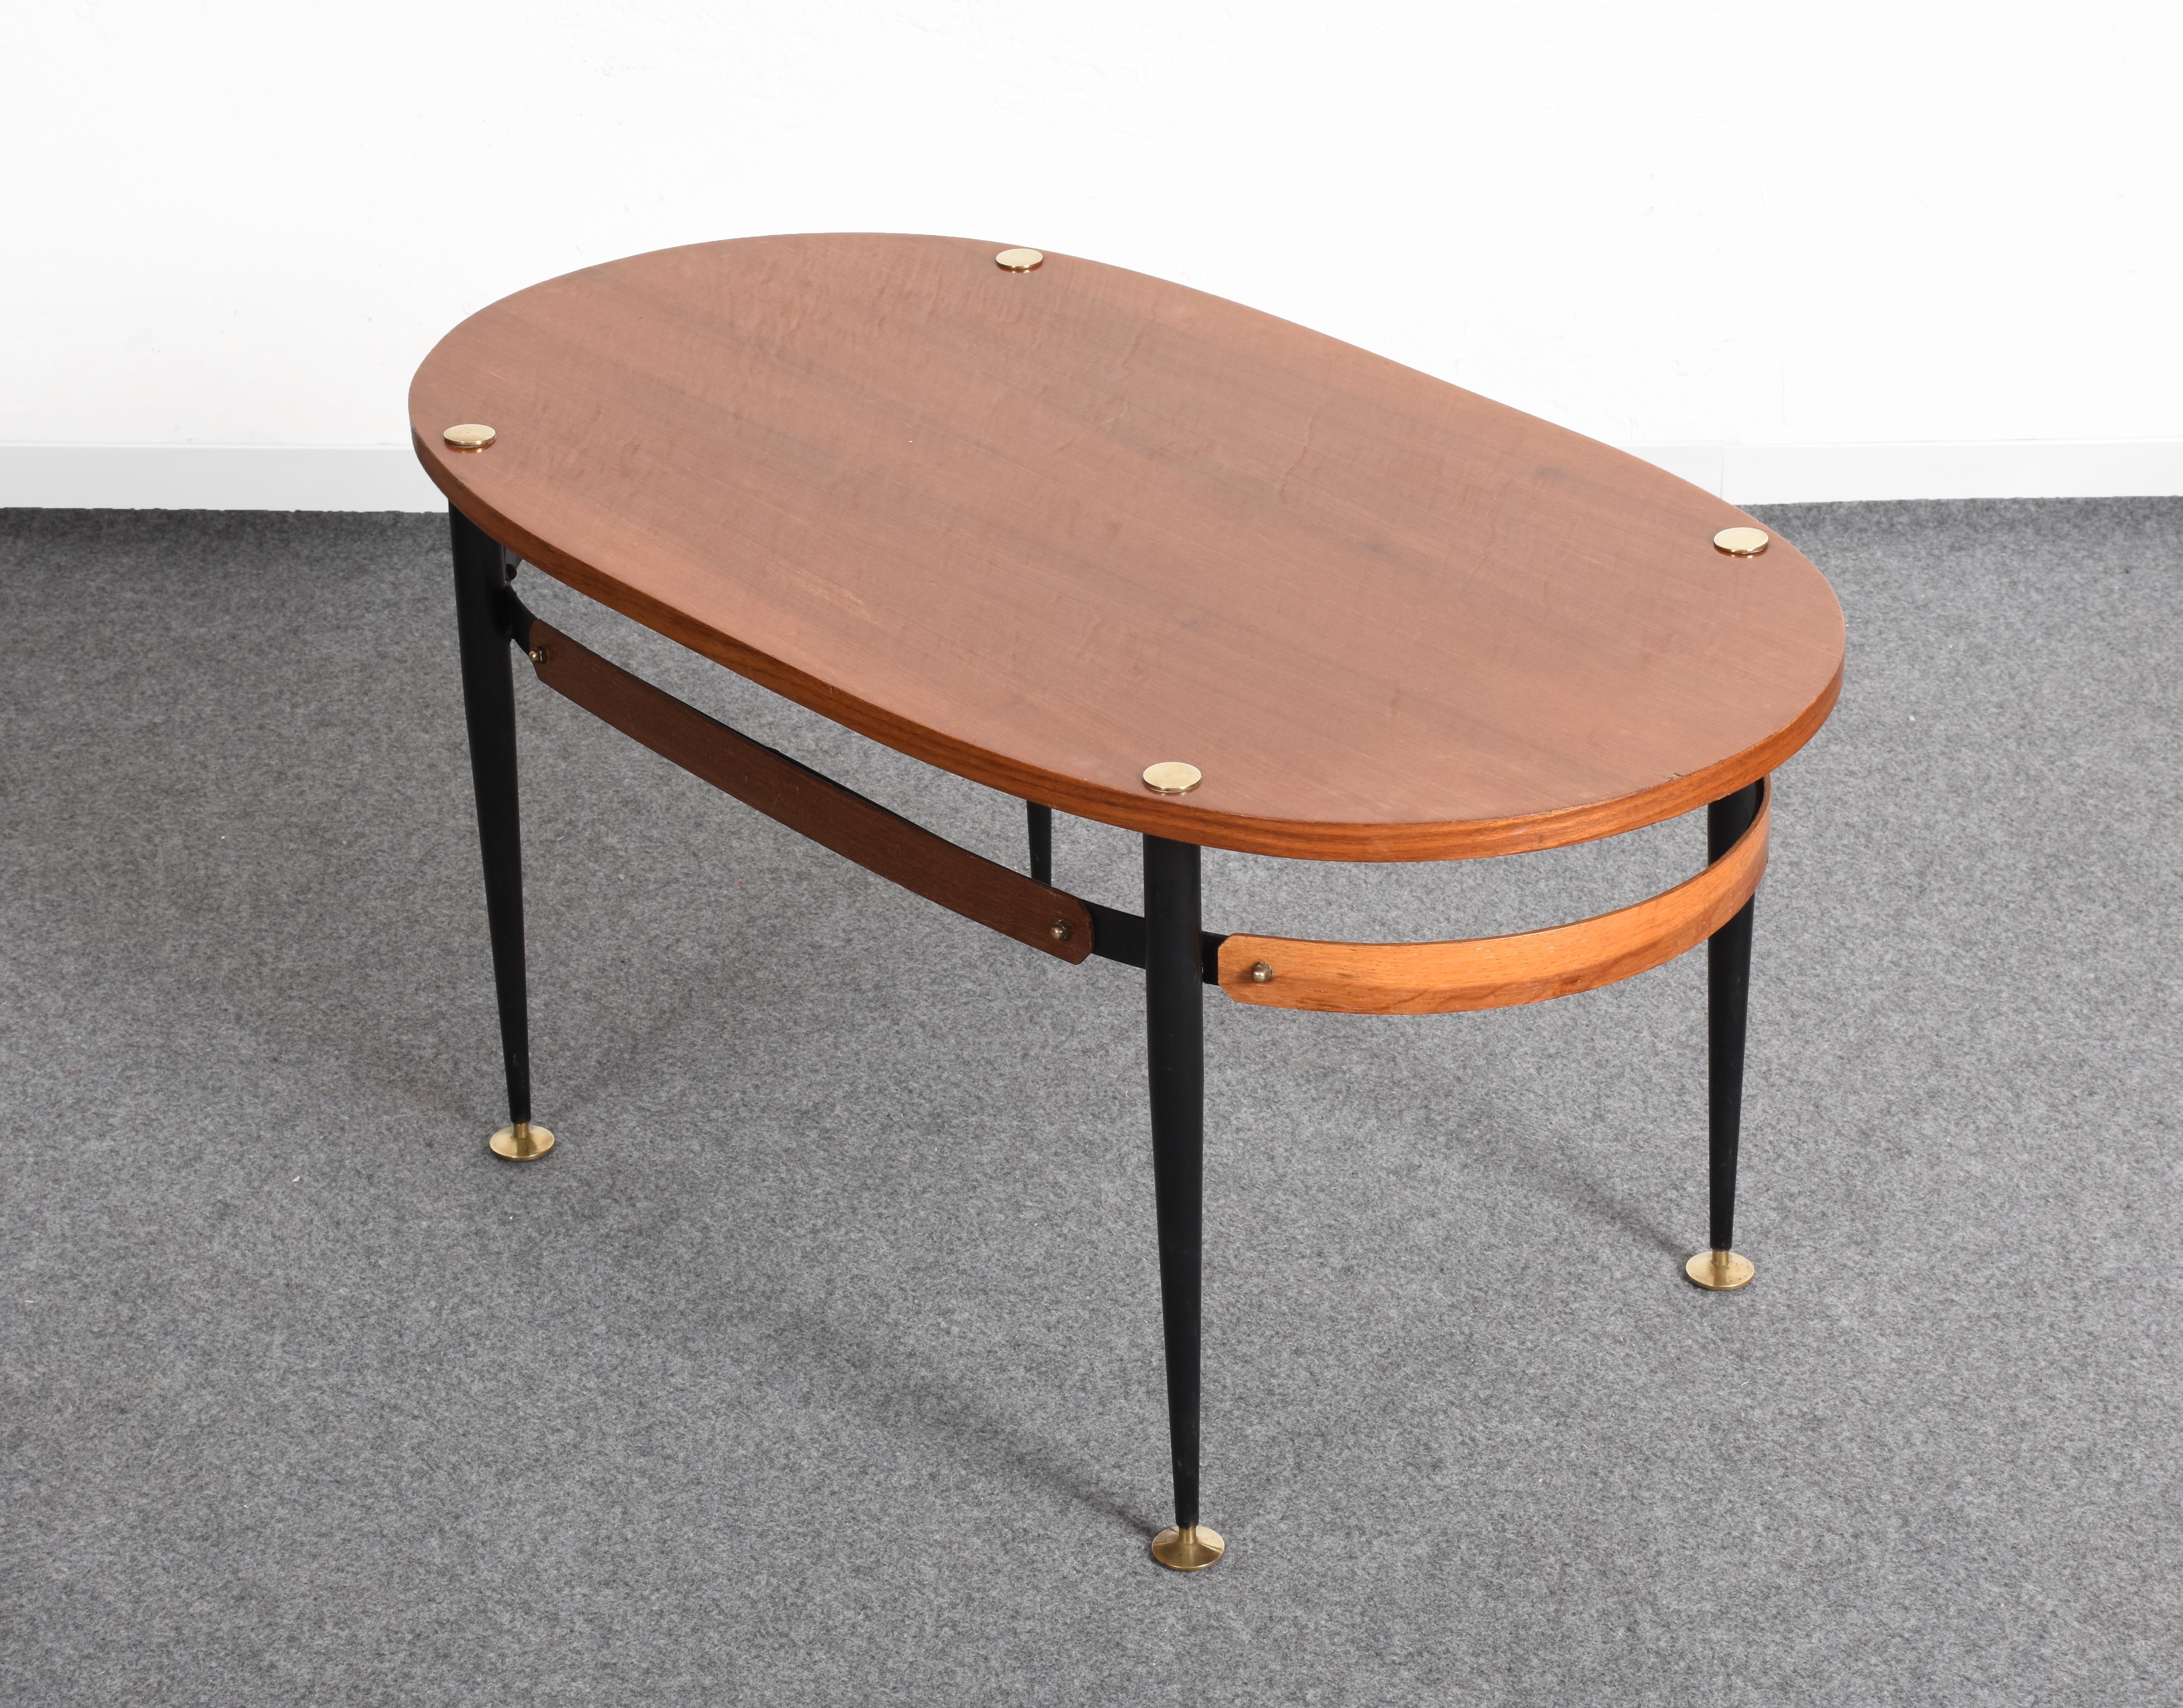 Magnifique table basse ovale en fer et bois de teck. Cet article a été conçu en Italie dans les années 1950 par Silvio Cavatorta.

Il présente un très élégant plateau de forme ovale monté sur des pieds en fer peint. Les pieds et les supports du